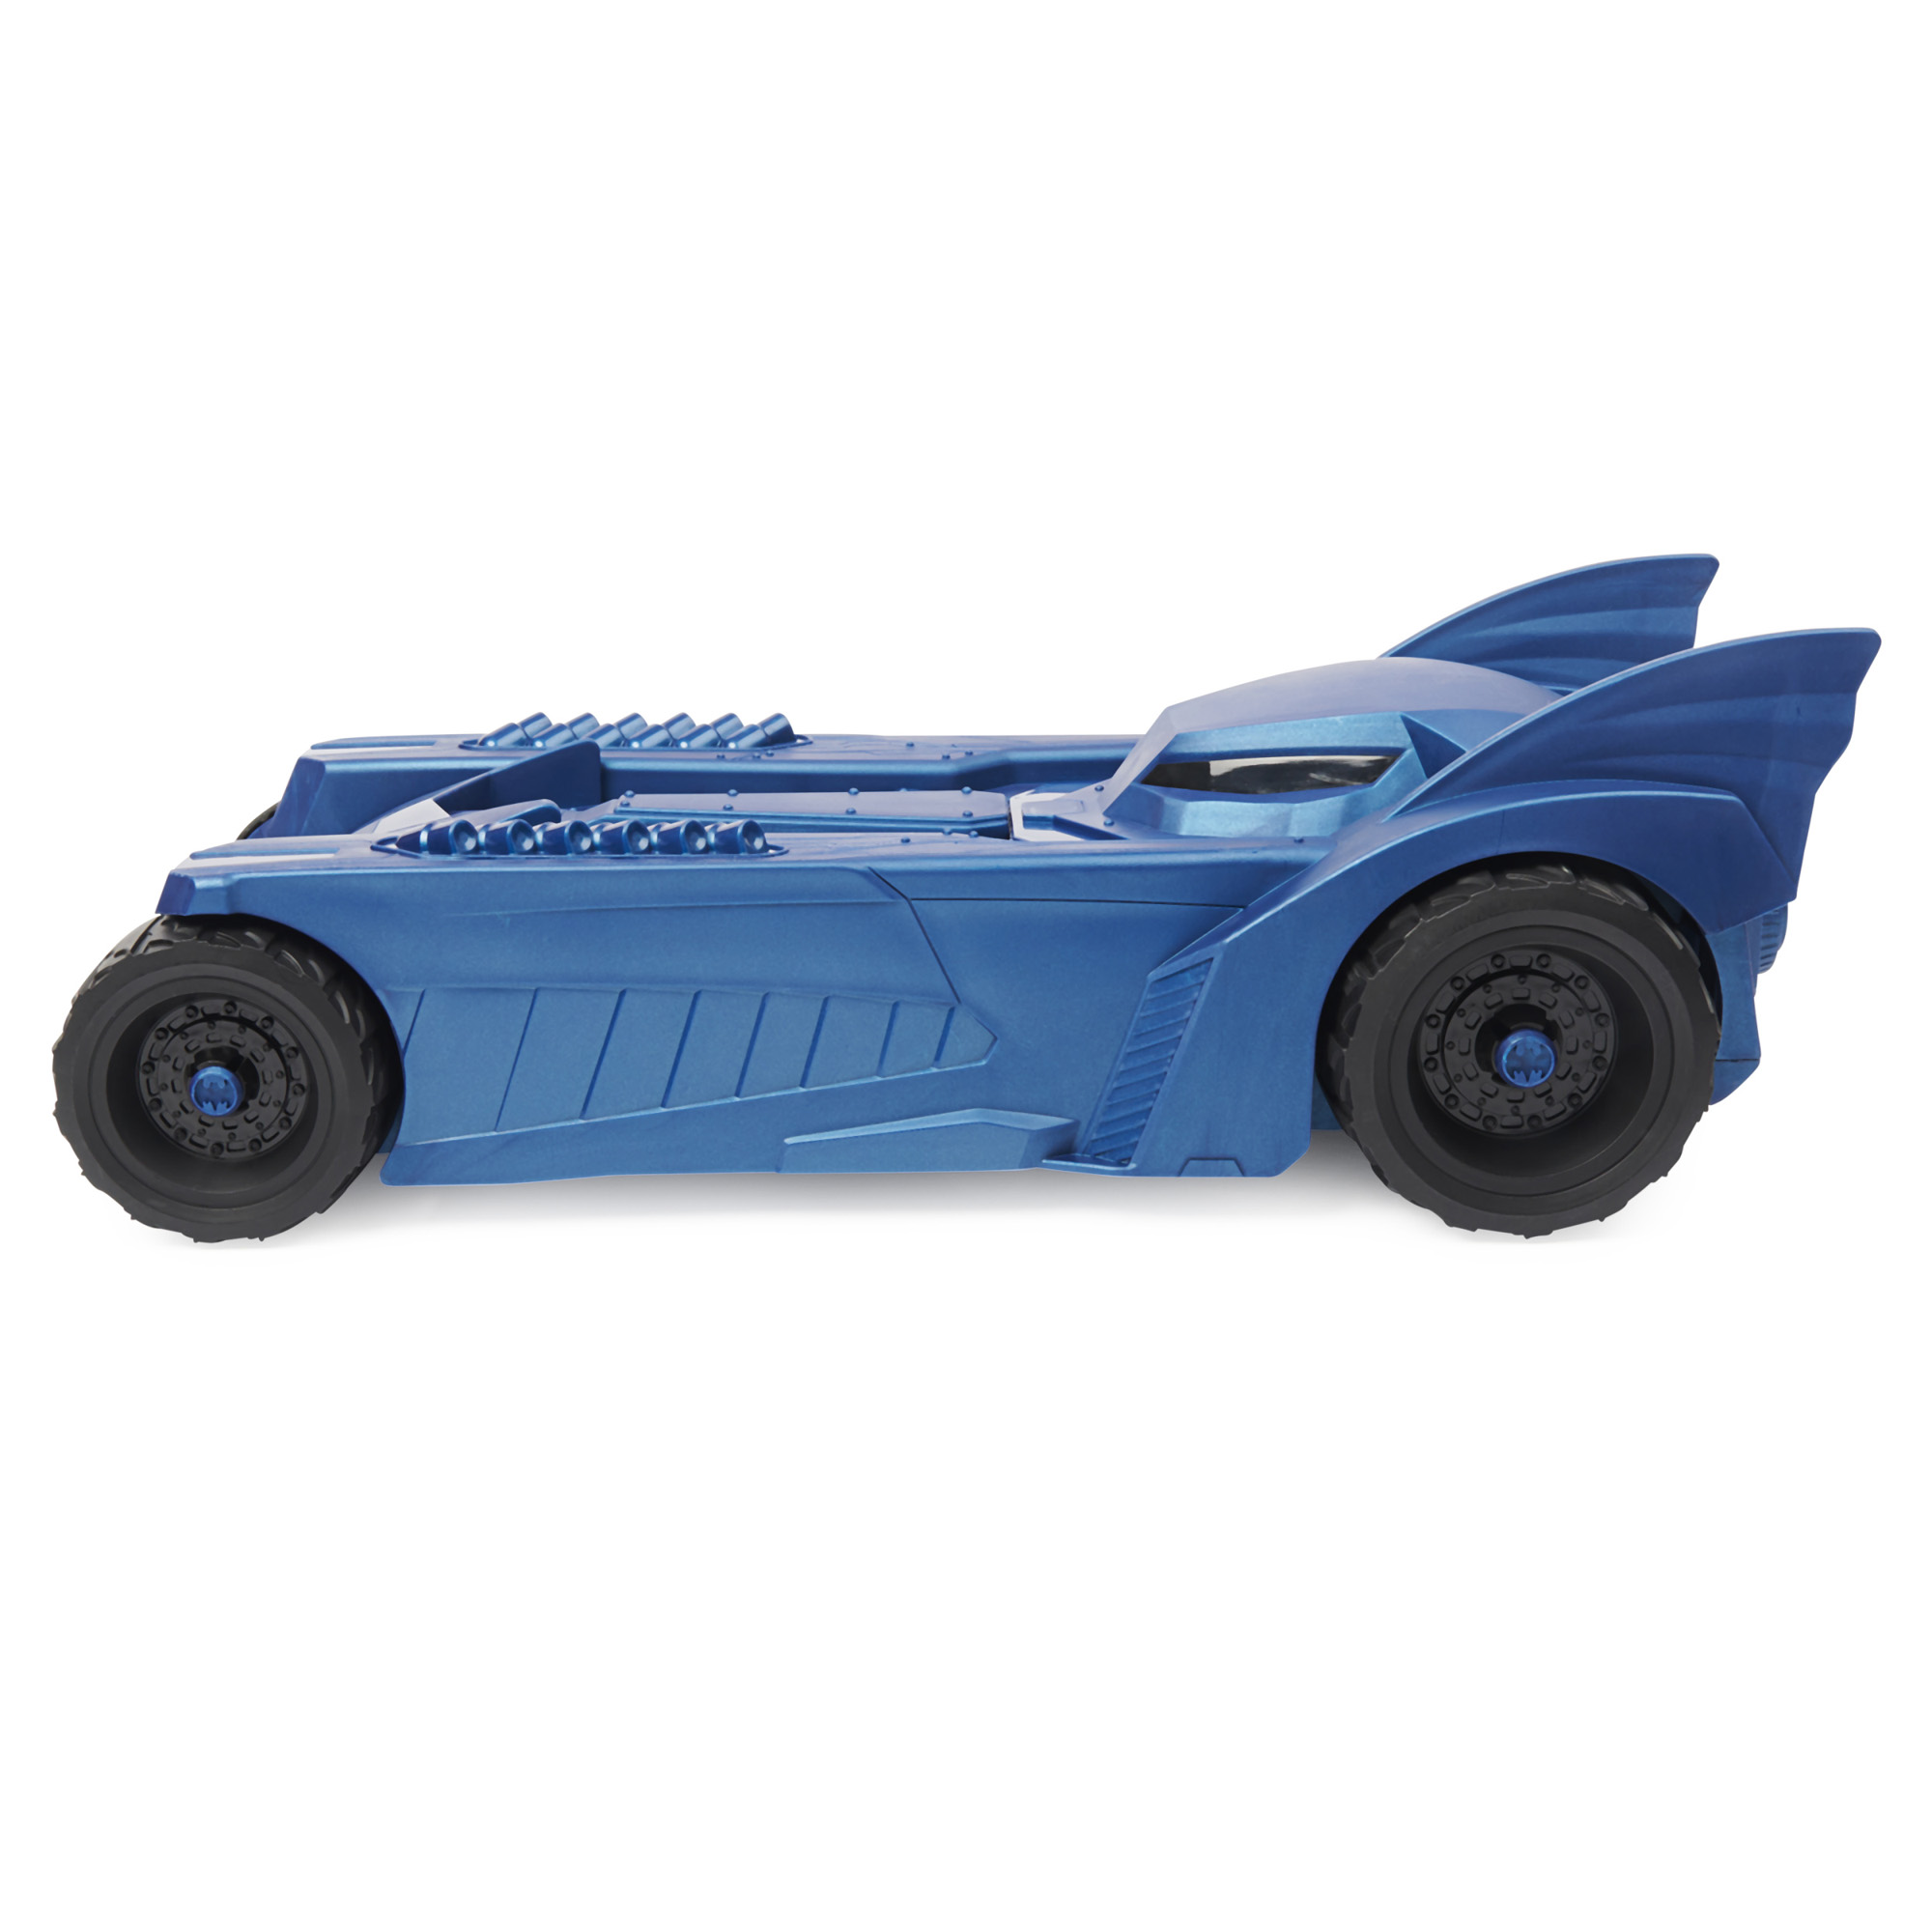 Batmobile blu con tettuccio apribile, contenitore personaggi - DC Comics